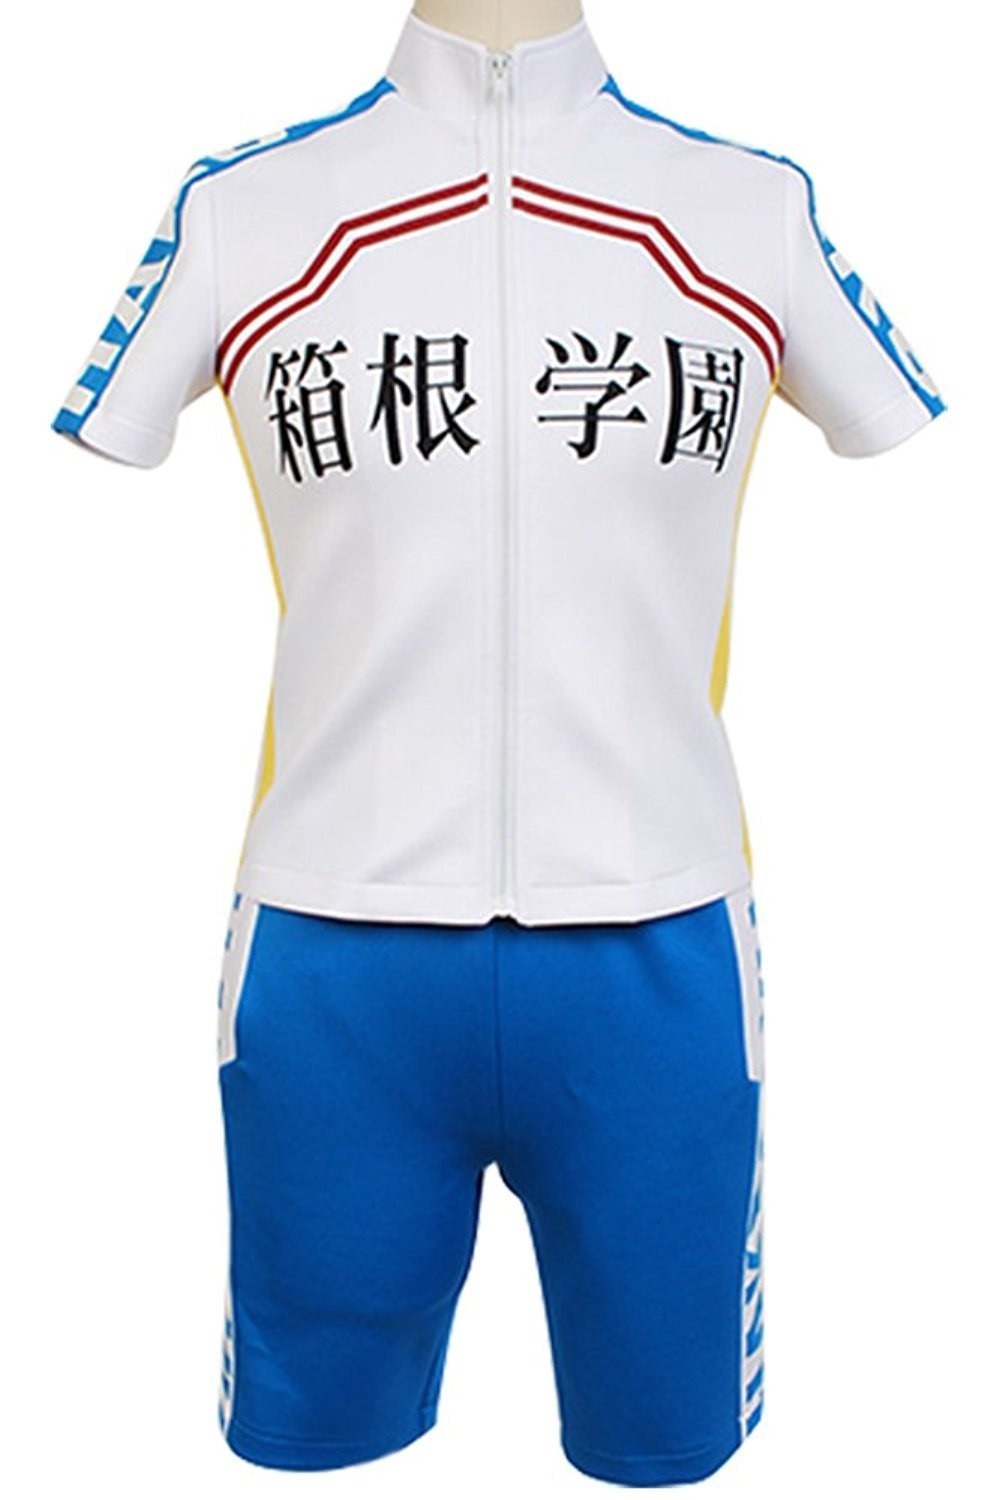 yowamushi pedal hakone members bike racing suit cosplay costume